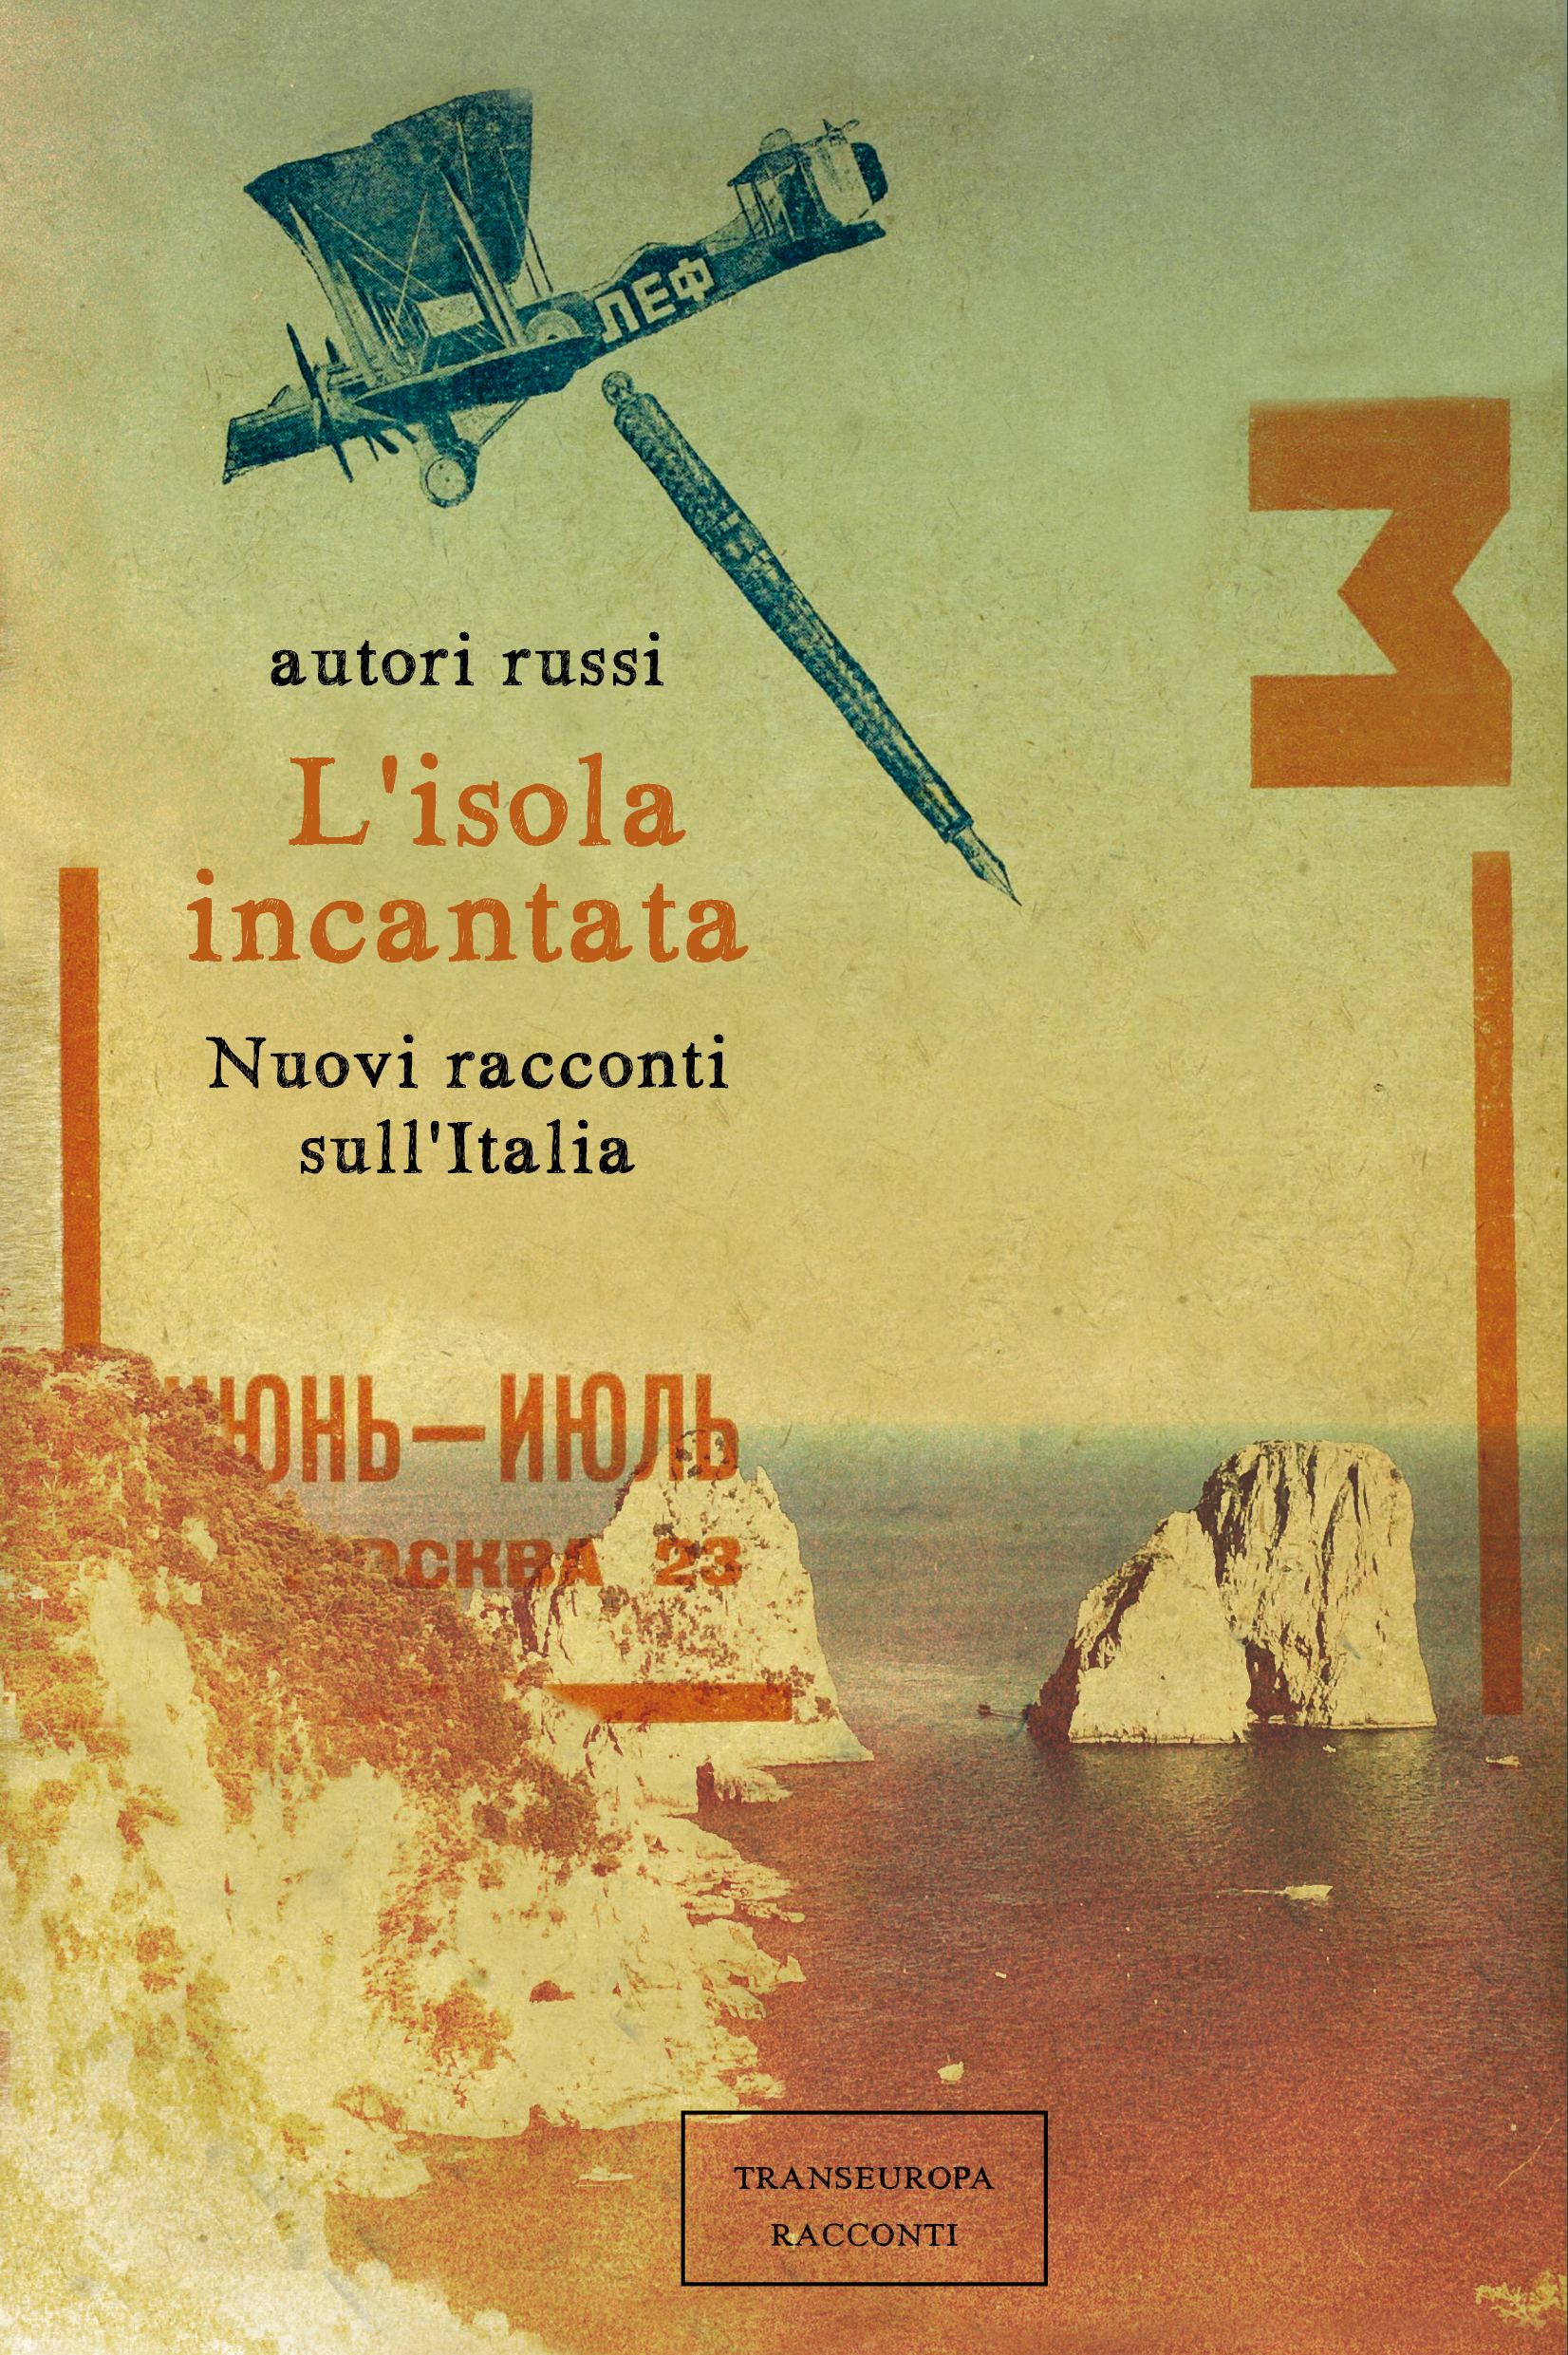 La copertina del libro “L’isola incantata. Nuovi racconti sull’Italia”.